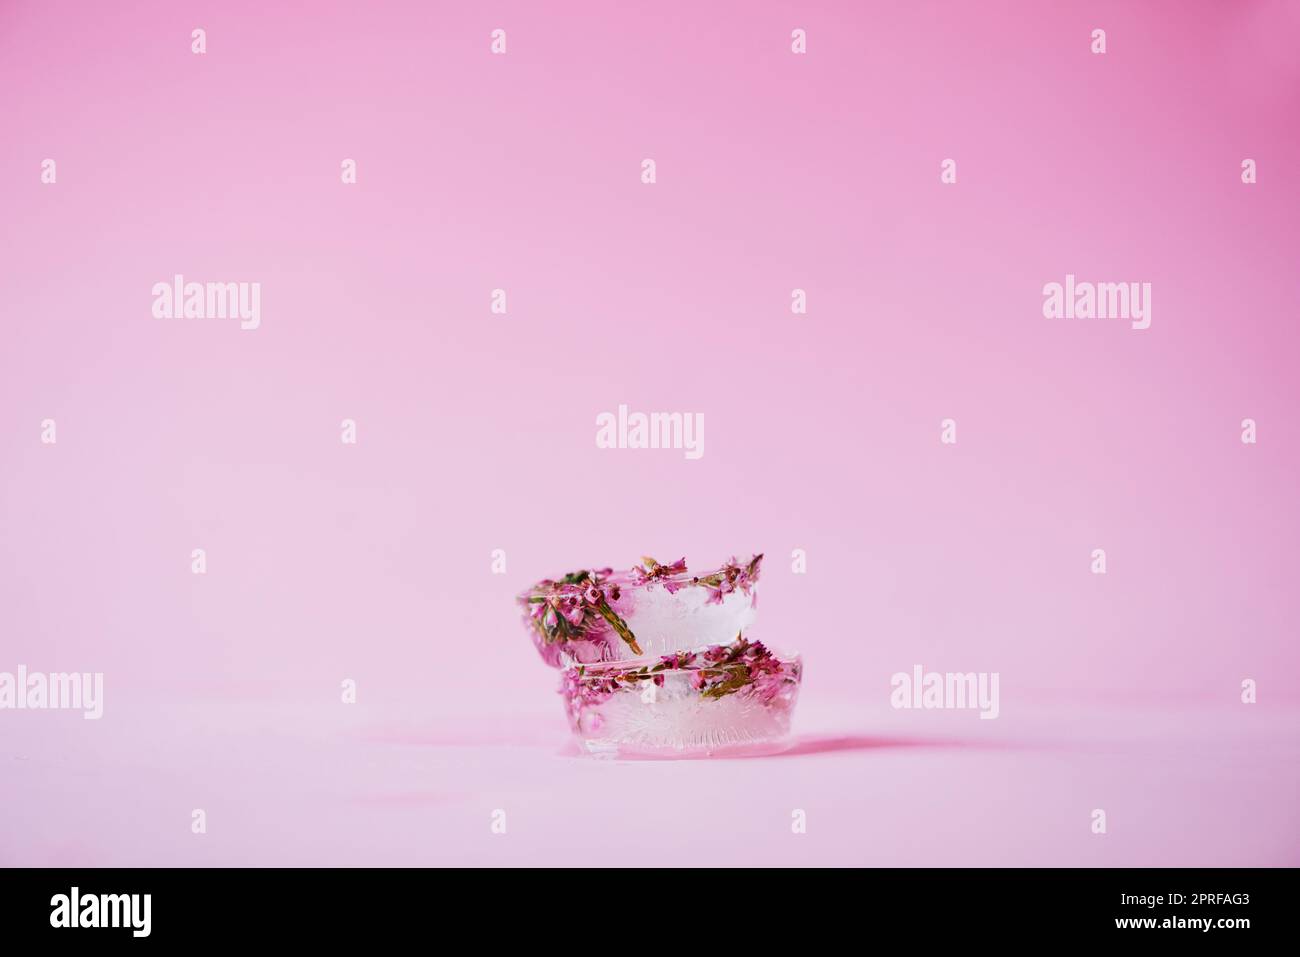 Finden Sie Schönheit in den kleinen Dingen. Studioaufnahme von Blumen, die vor einem rosa Hintergrund in Eisblöcken gefroren wurden. Stockfoto